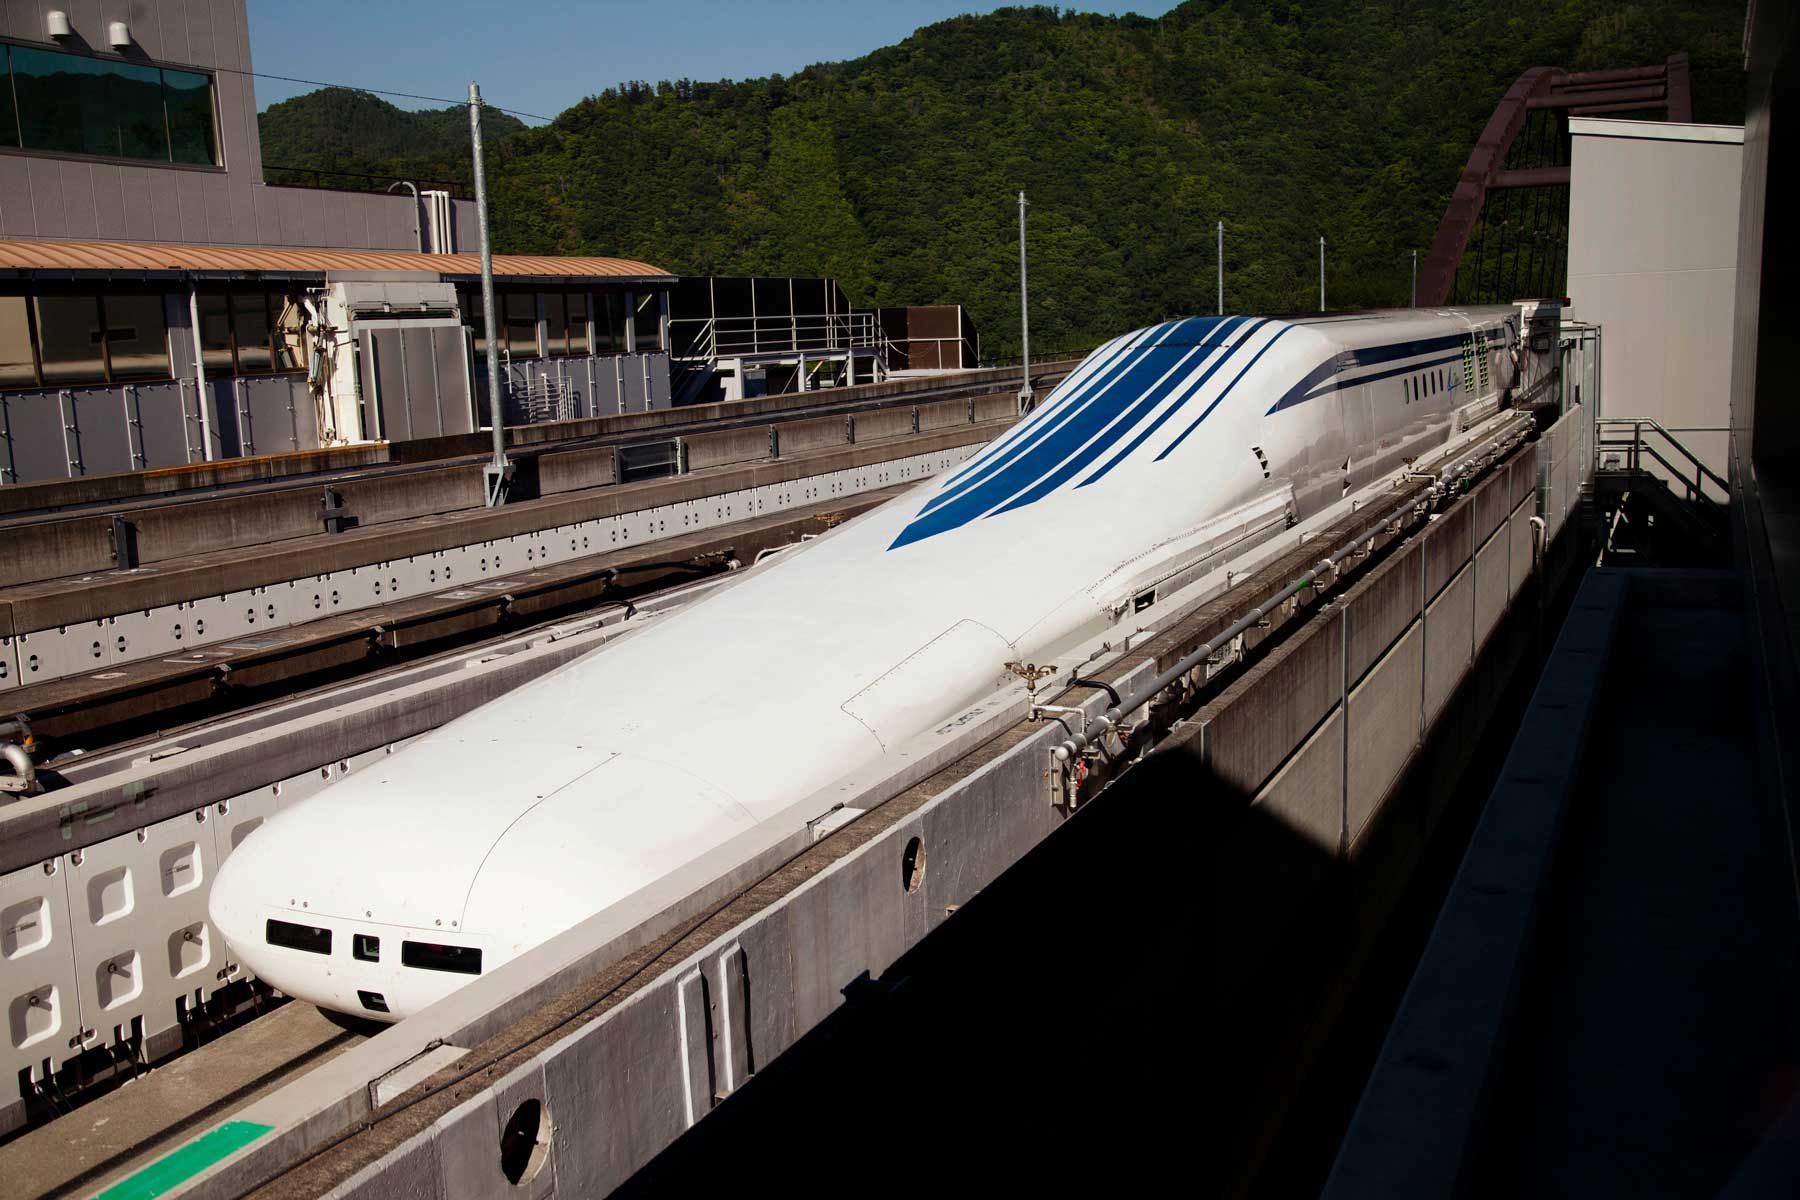 Vlak serije L0 s magnetskom levitacijom (maglev), koji je na ispitivanju u željezničkoj pruzi Central Japan, na ispitnoj stazi Yamanashi Maglev.